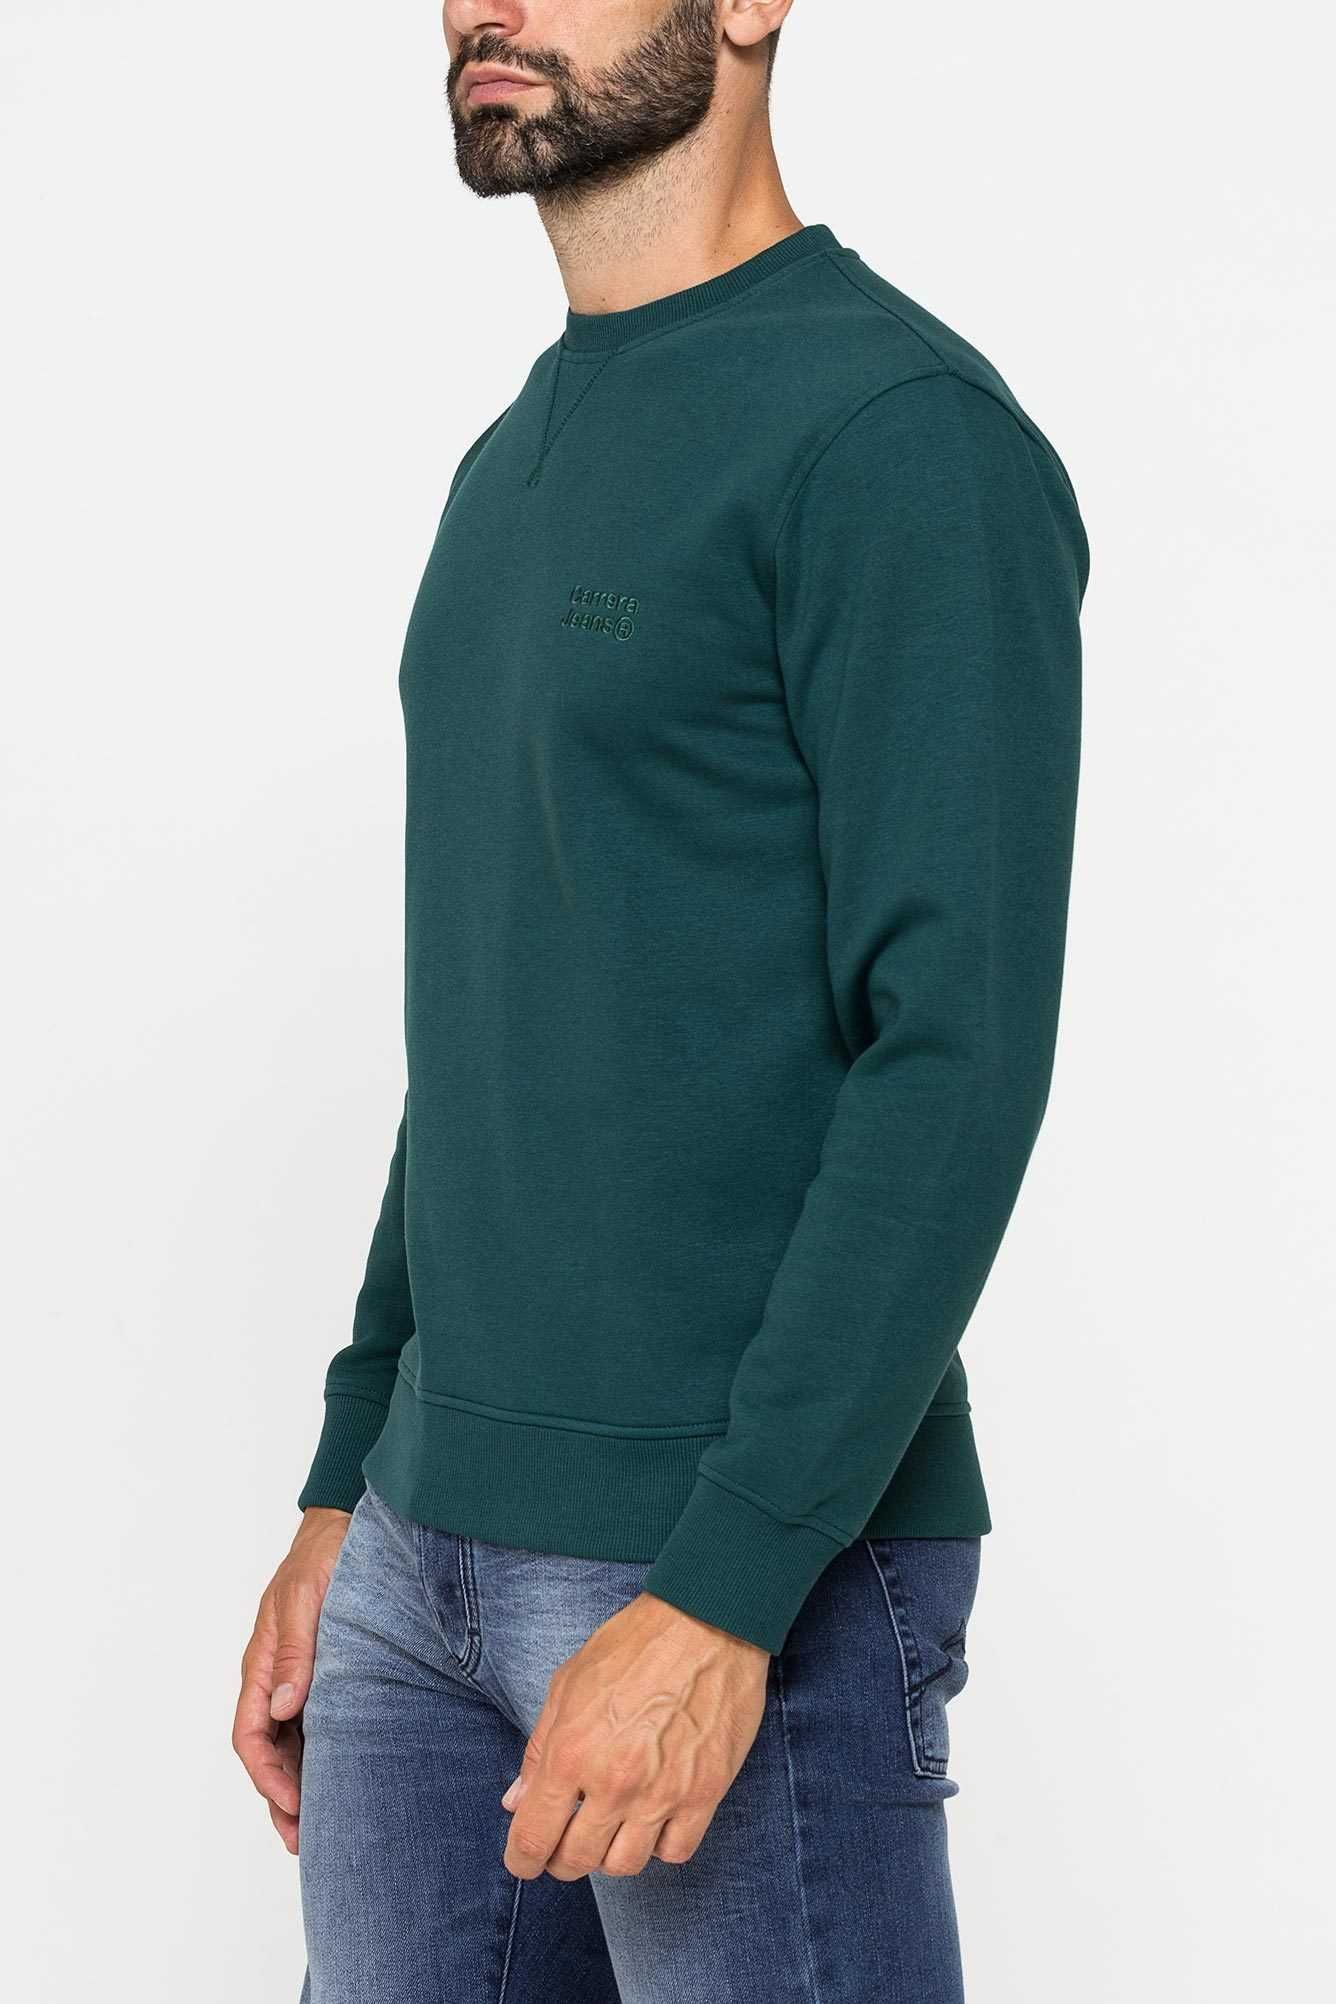 Męska bluza klasyczna Carrera Jeans (Sea Moss) L